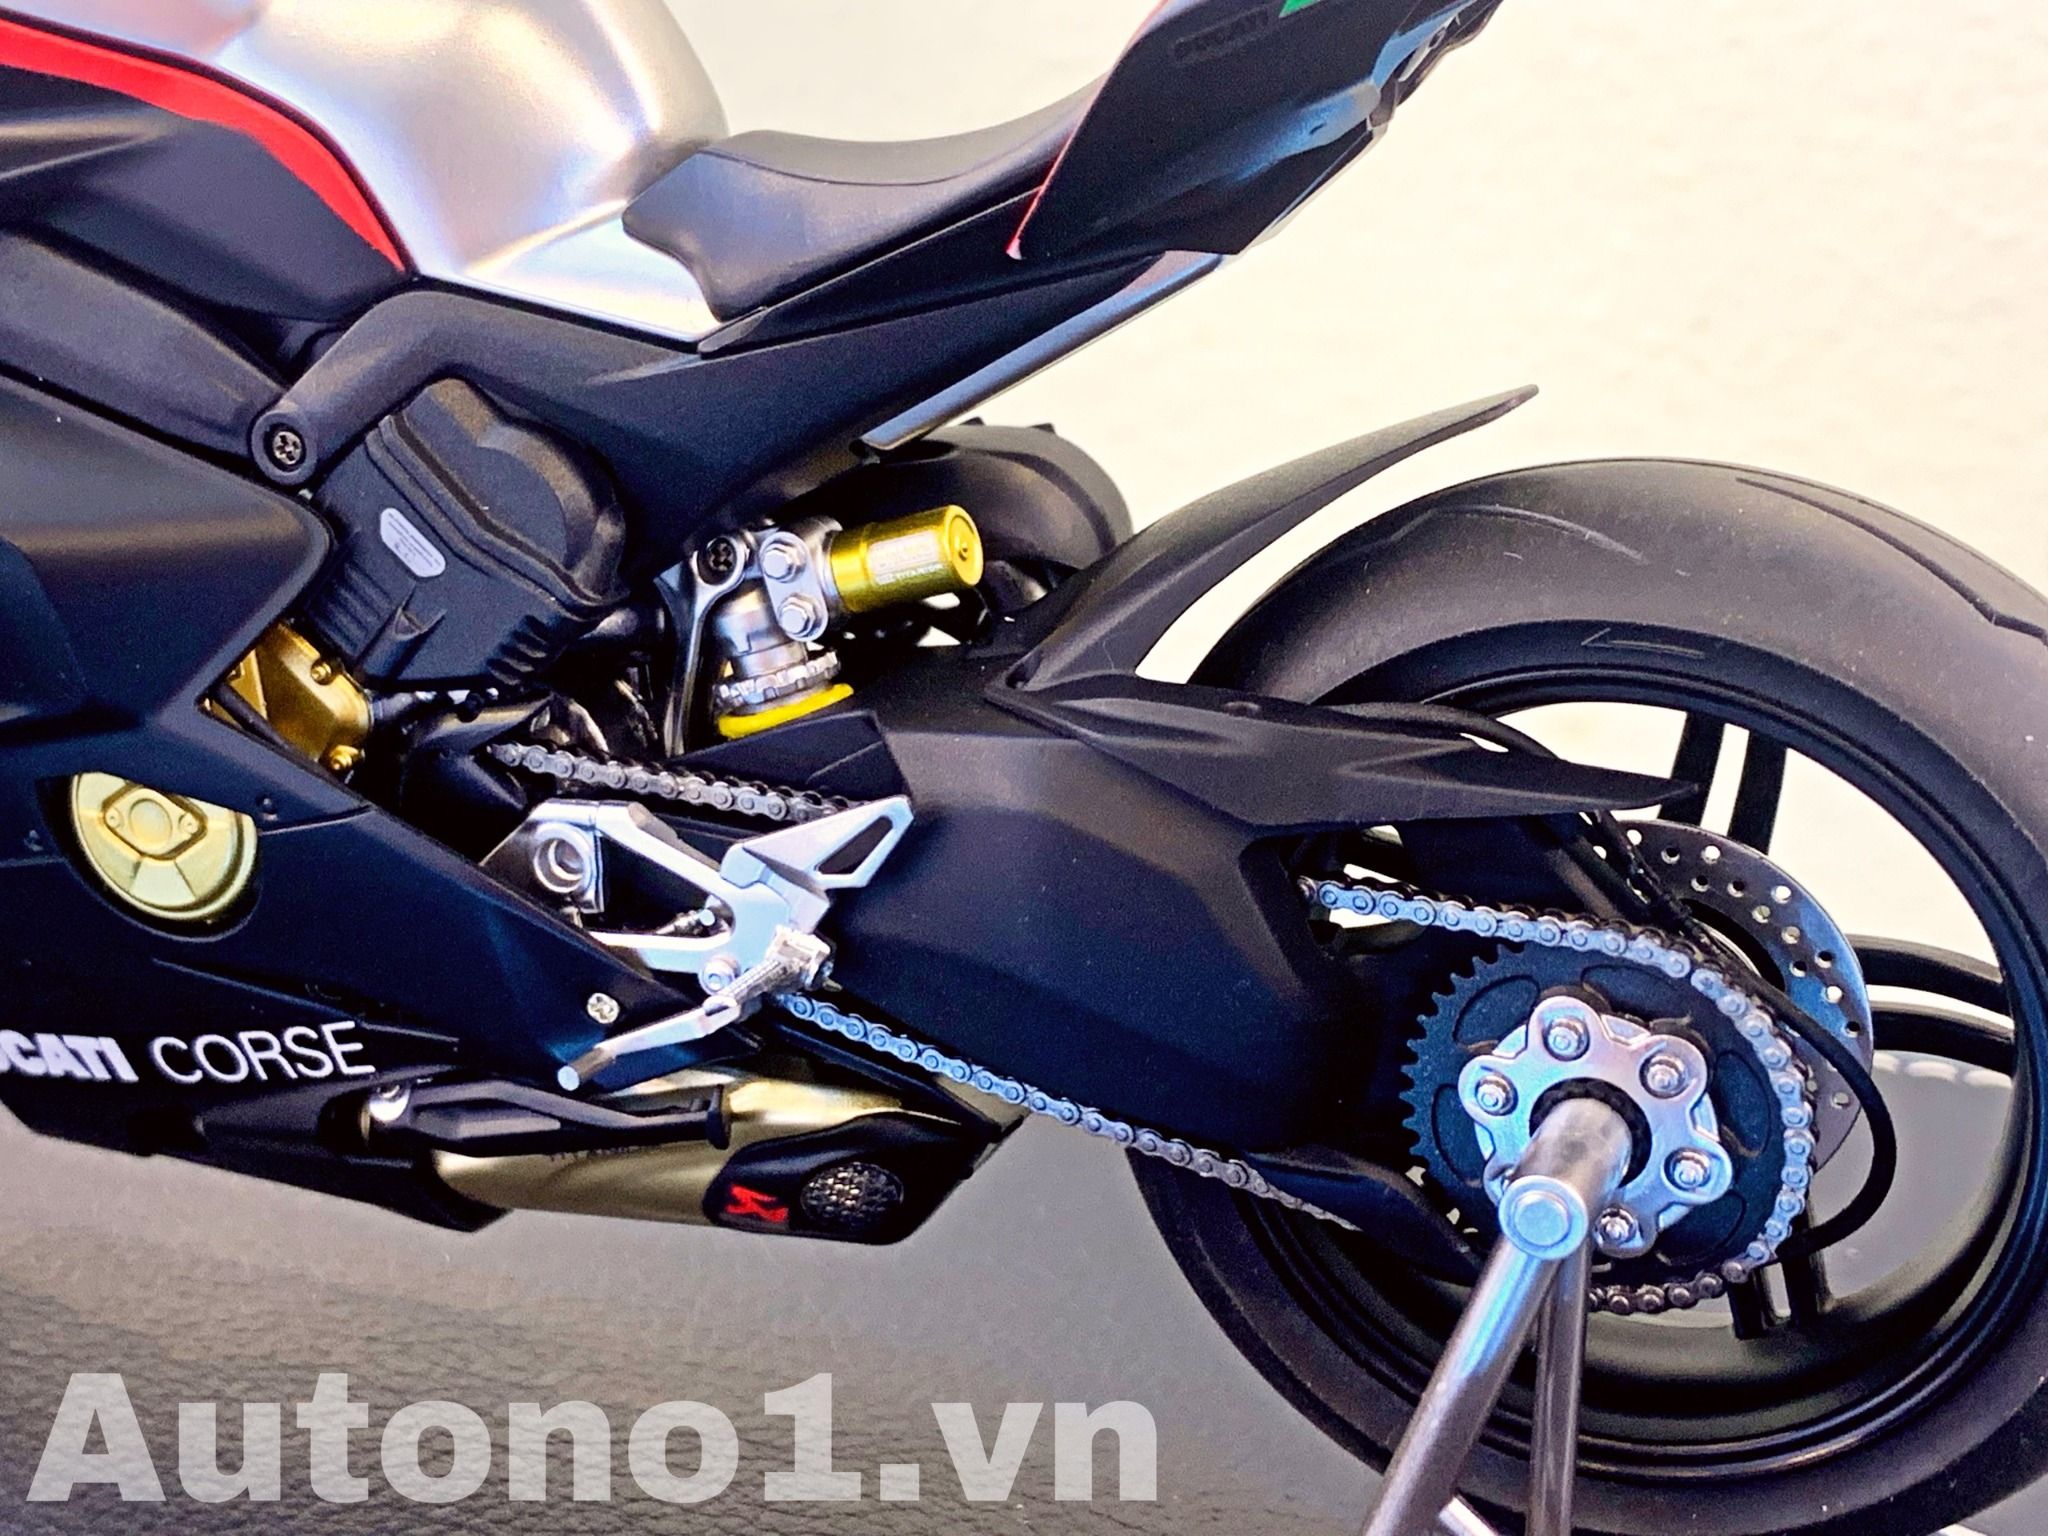  Mô hình xe cao cấp Ducati Superleggera V4 Corse black độ nồi khô tỉ lệ 1:12 Tamiya D234F 